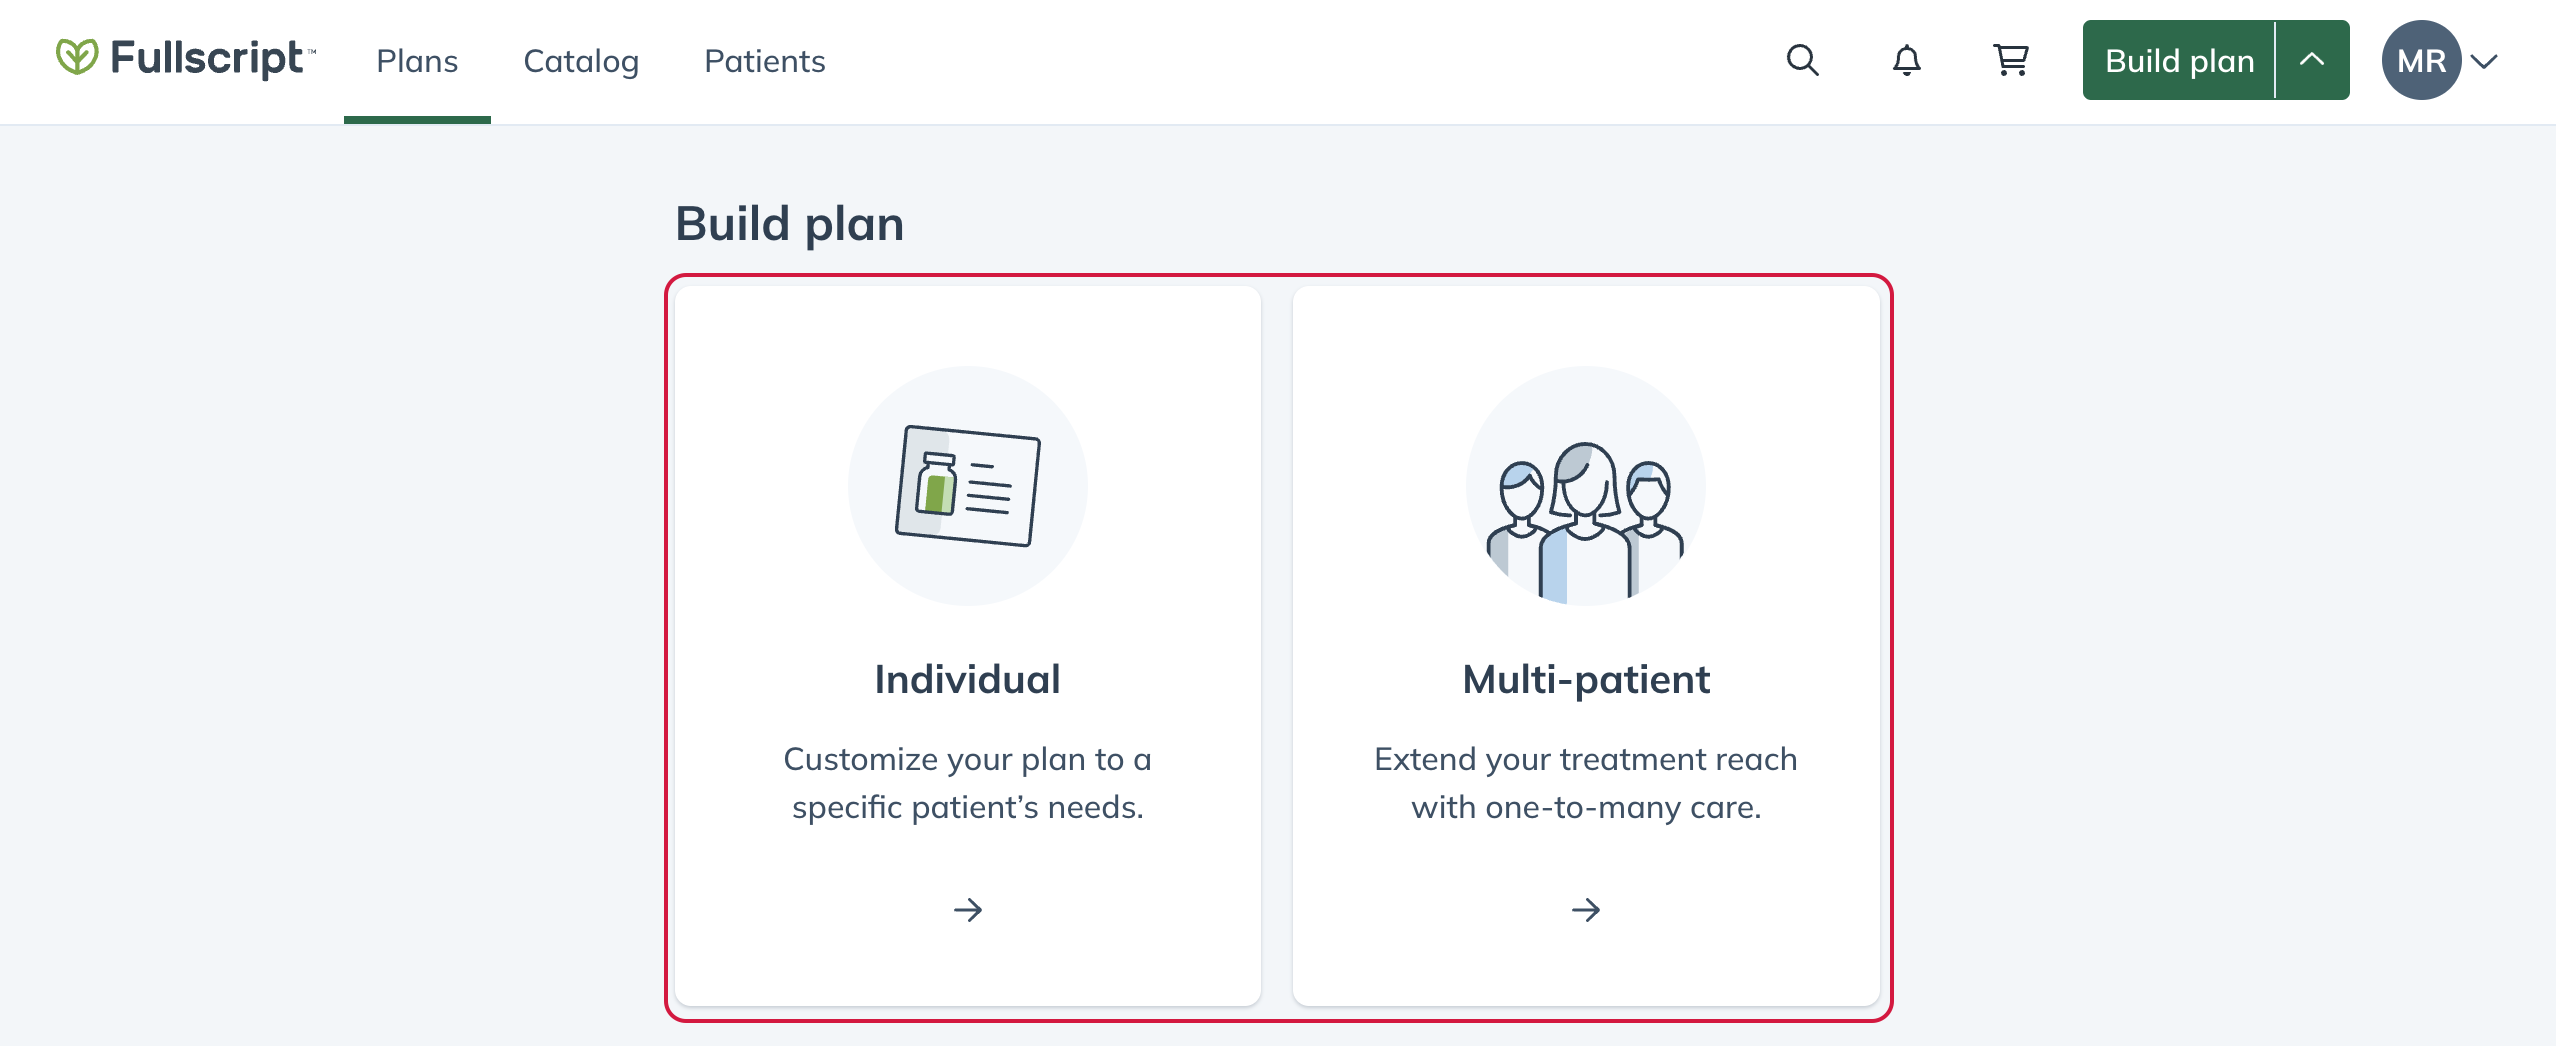 Choosing an individual plan or multi-patient plan